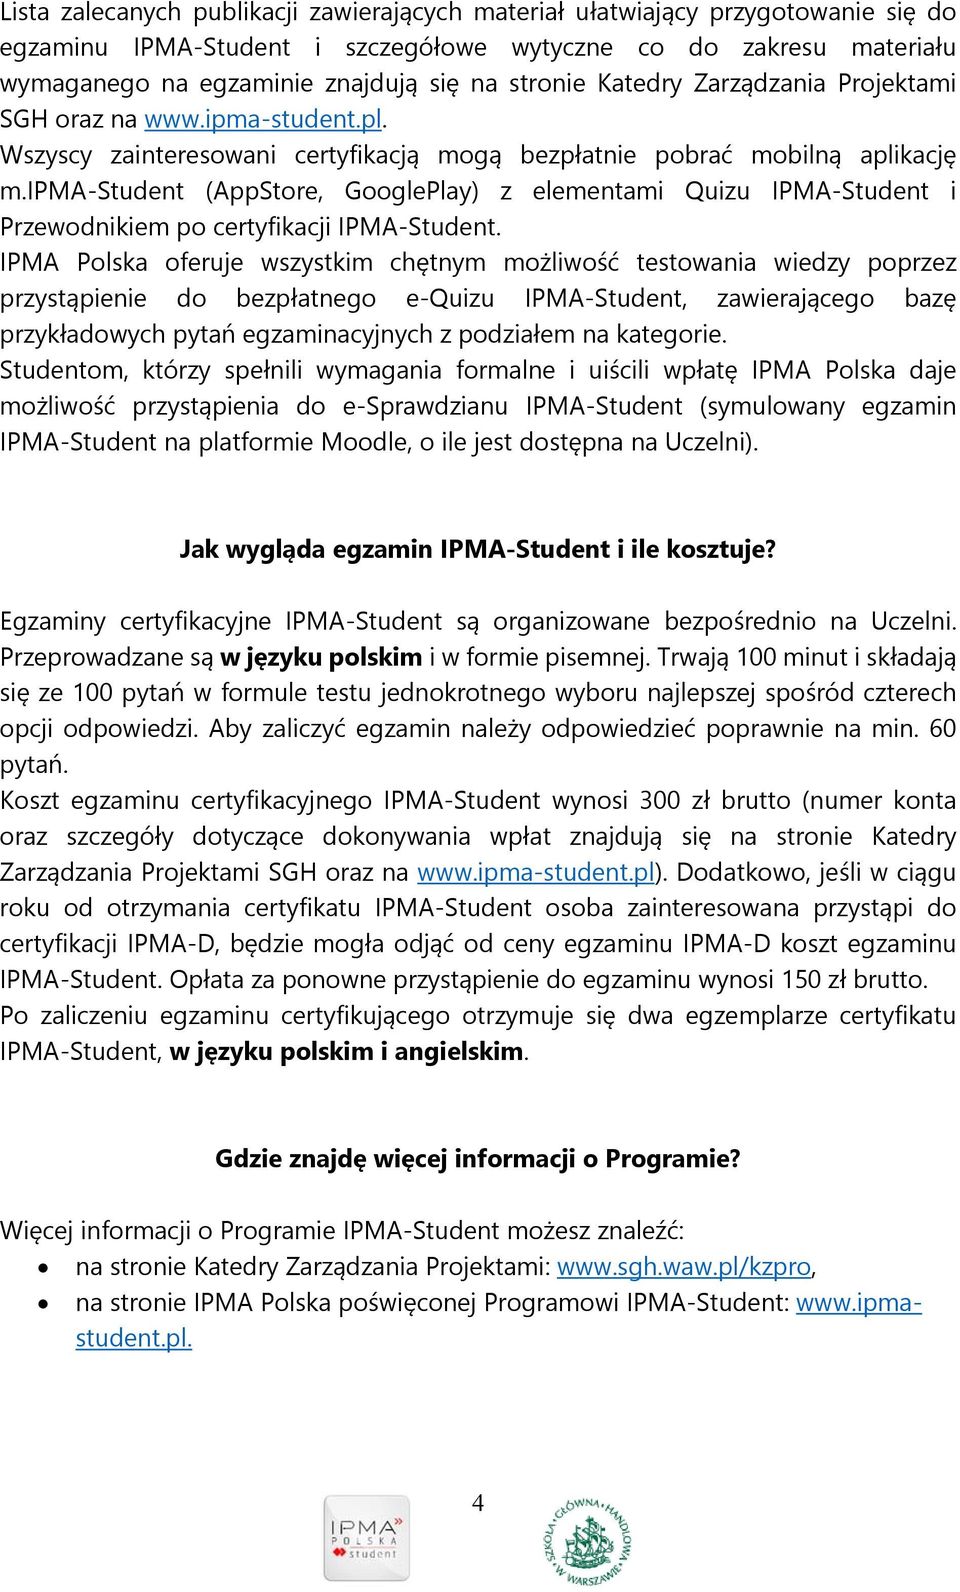 ipma-student (AppStore, GooglePlay) z elementami Quizu IPMA-Student i Przewodnikiem po certyfikacji IPMA-Student.